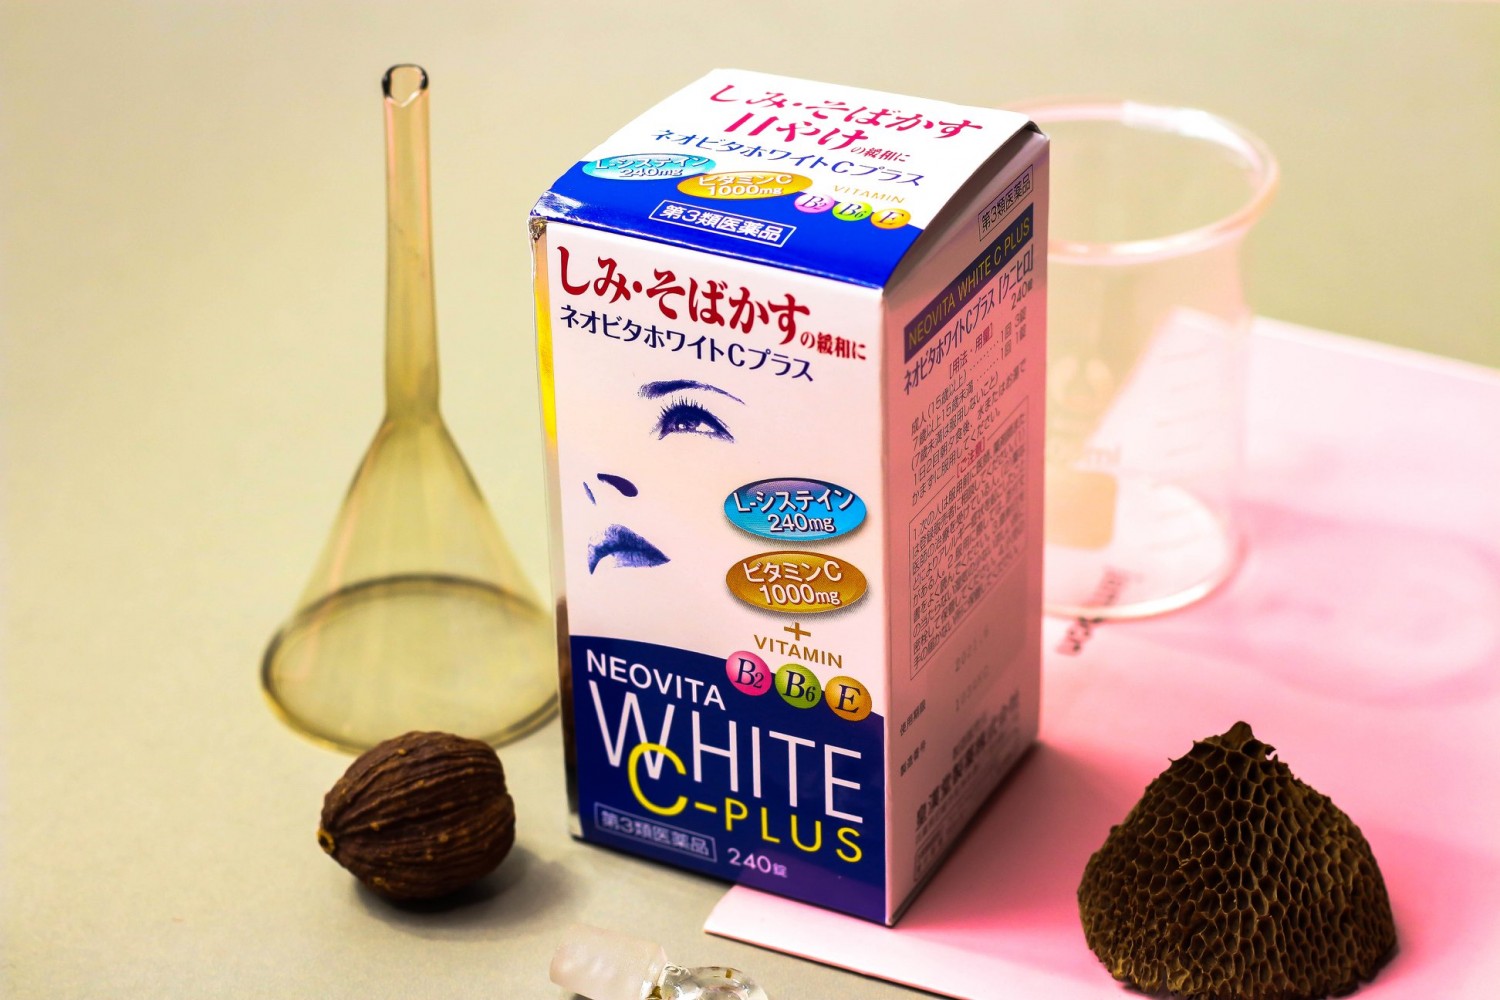 Viên uống trị nám của Nhật Vita White Plus CEB2 là một sản phẩm đột phá